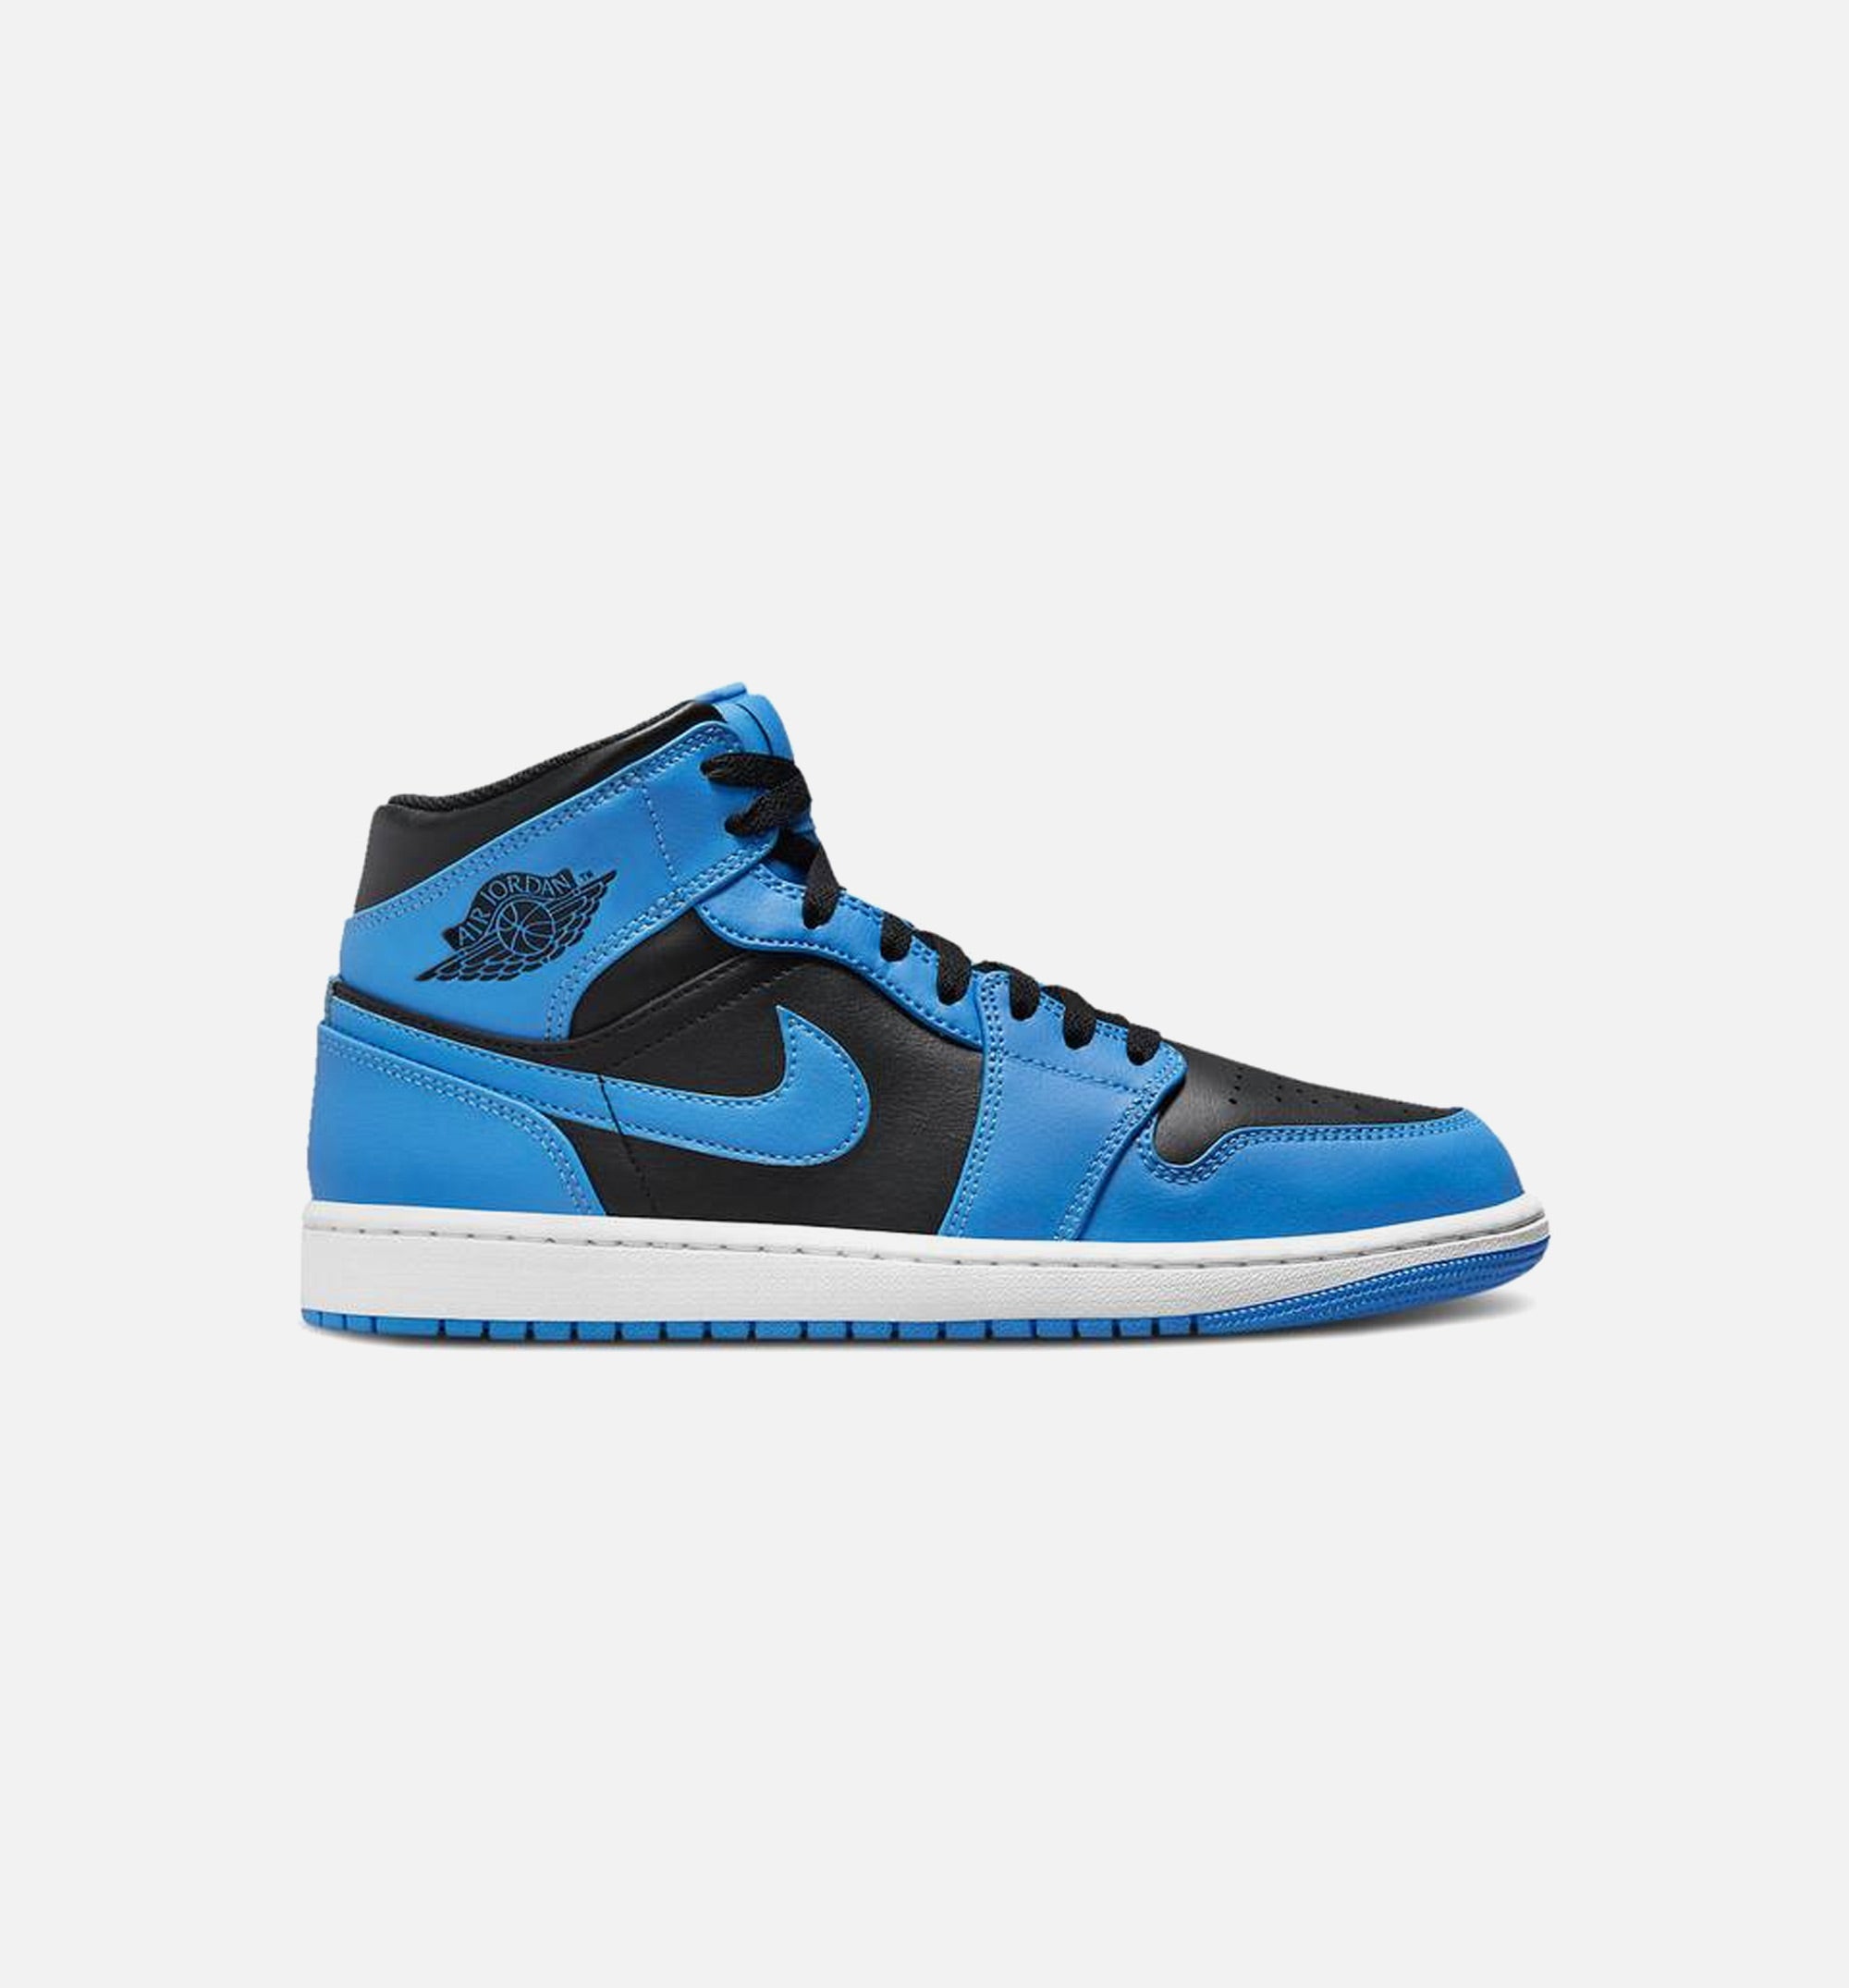 Nike Air Jordan 1 Mid Shoes University Blue Black DQ8426-401 Men's